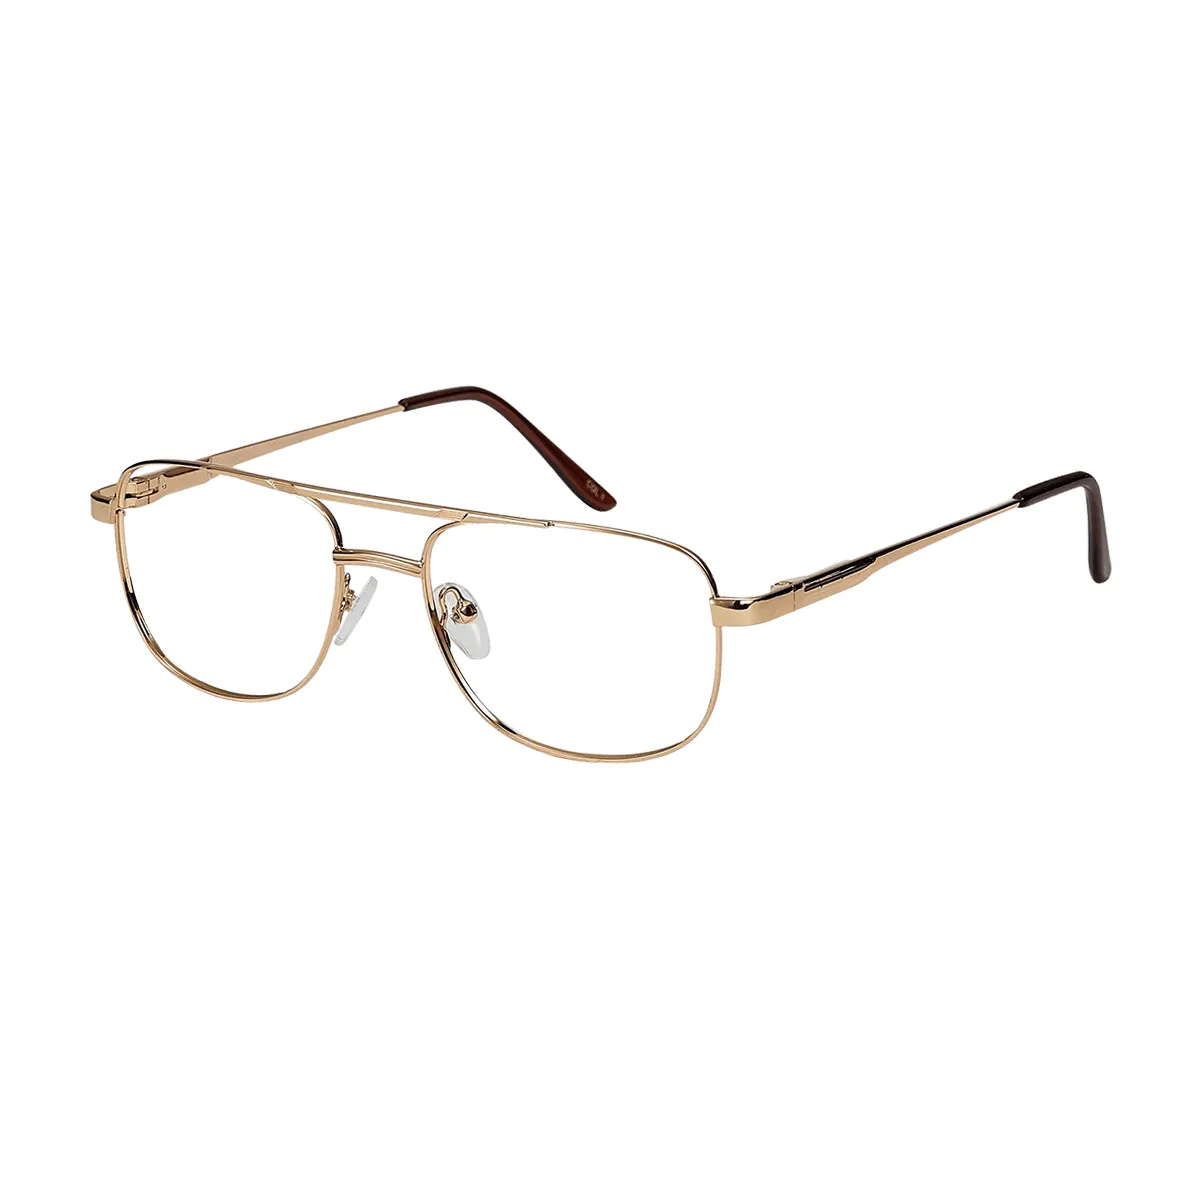 Manuel - Aviator Gold Glasses for Men